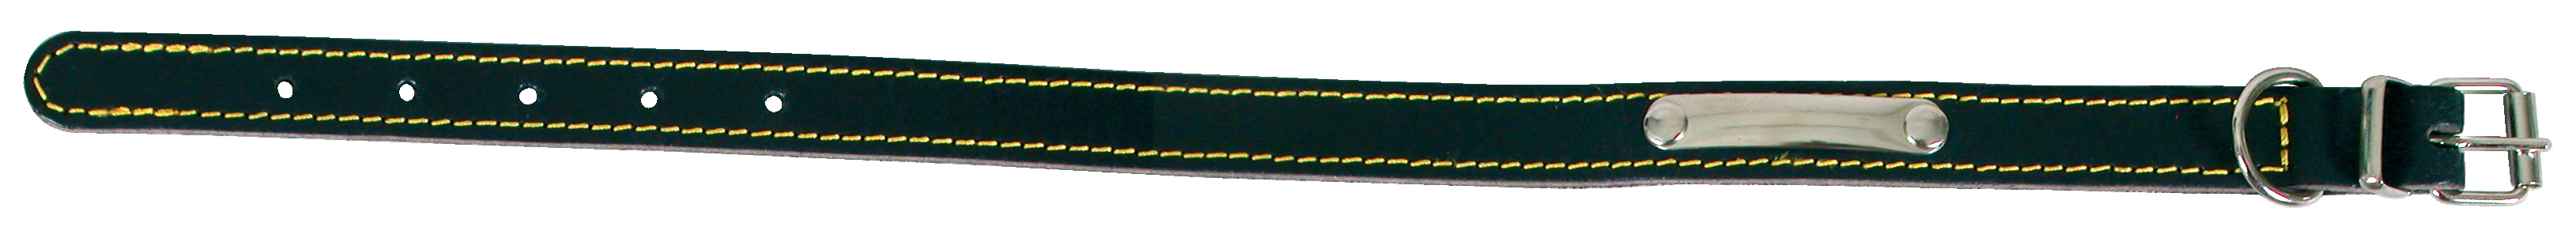 Collier piqué simple noir croute 50cm - ZOLUX